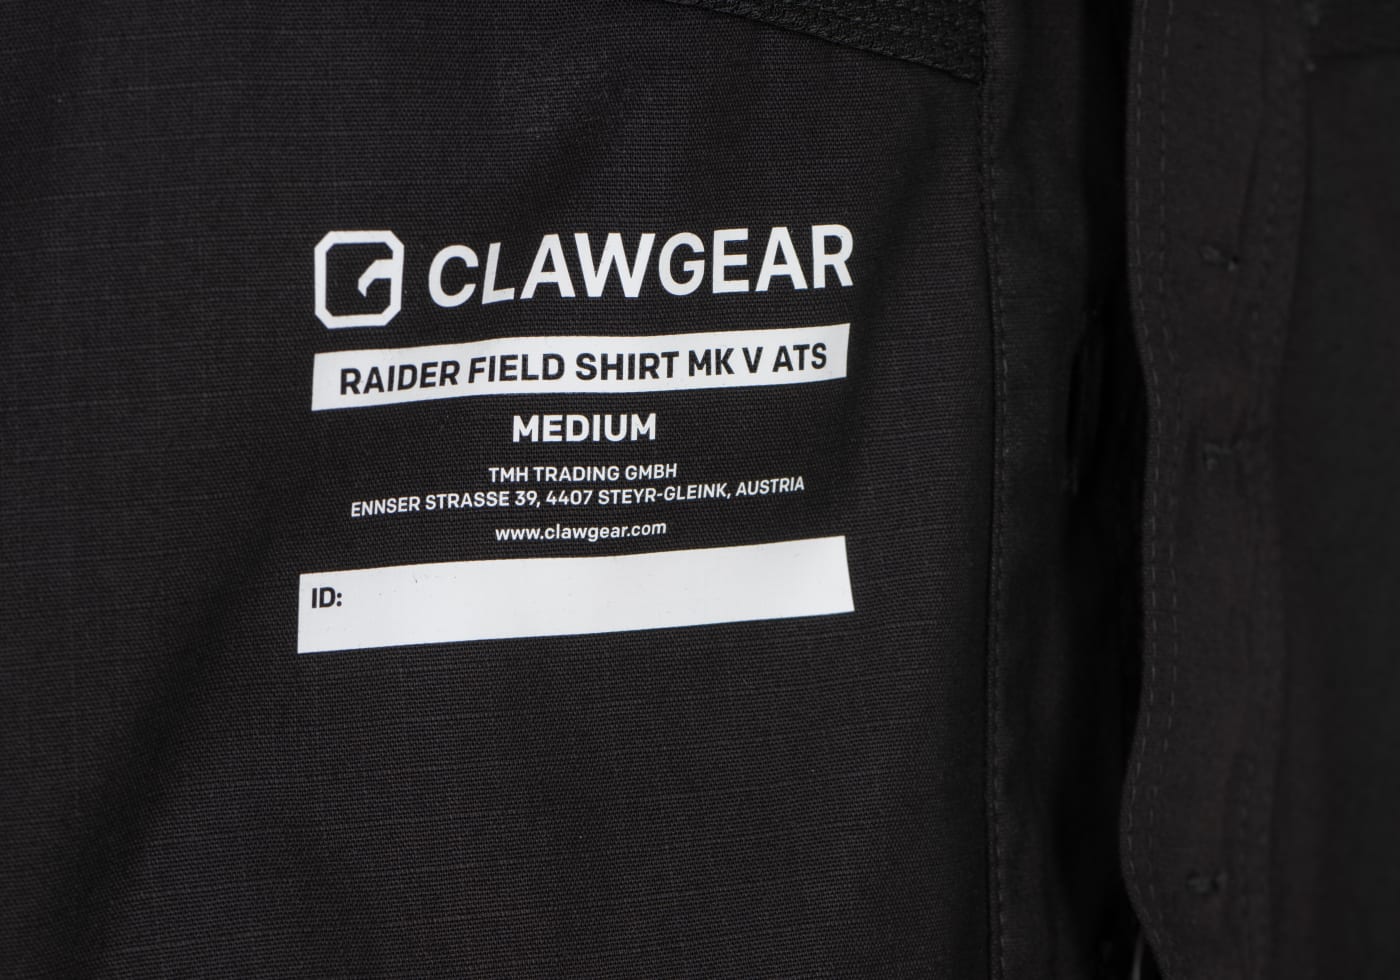 Clawgear Raider Field Shirt MK V ATS